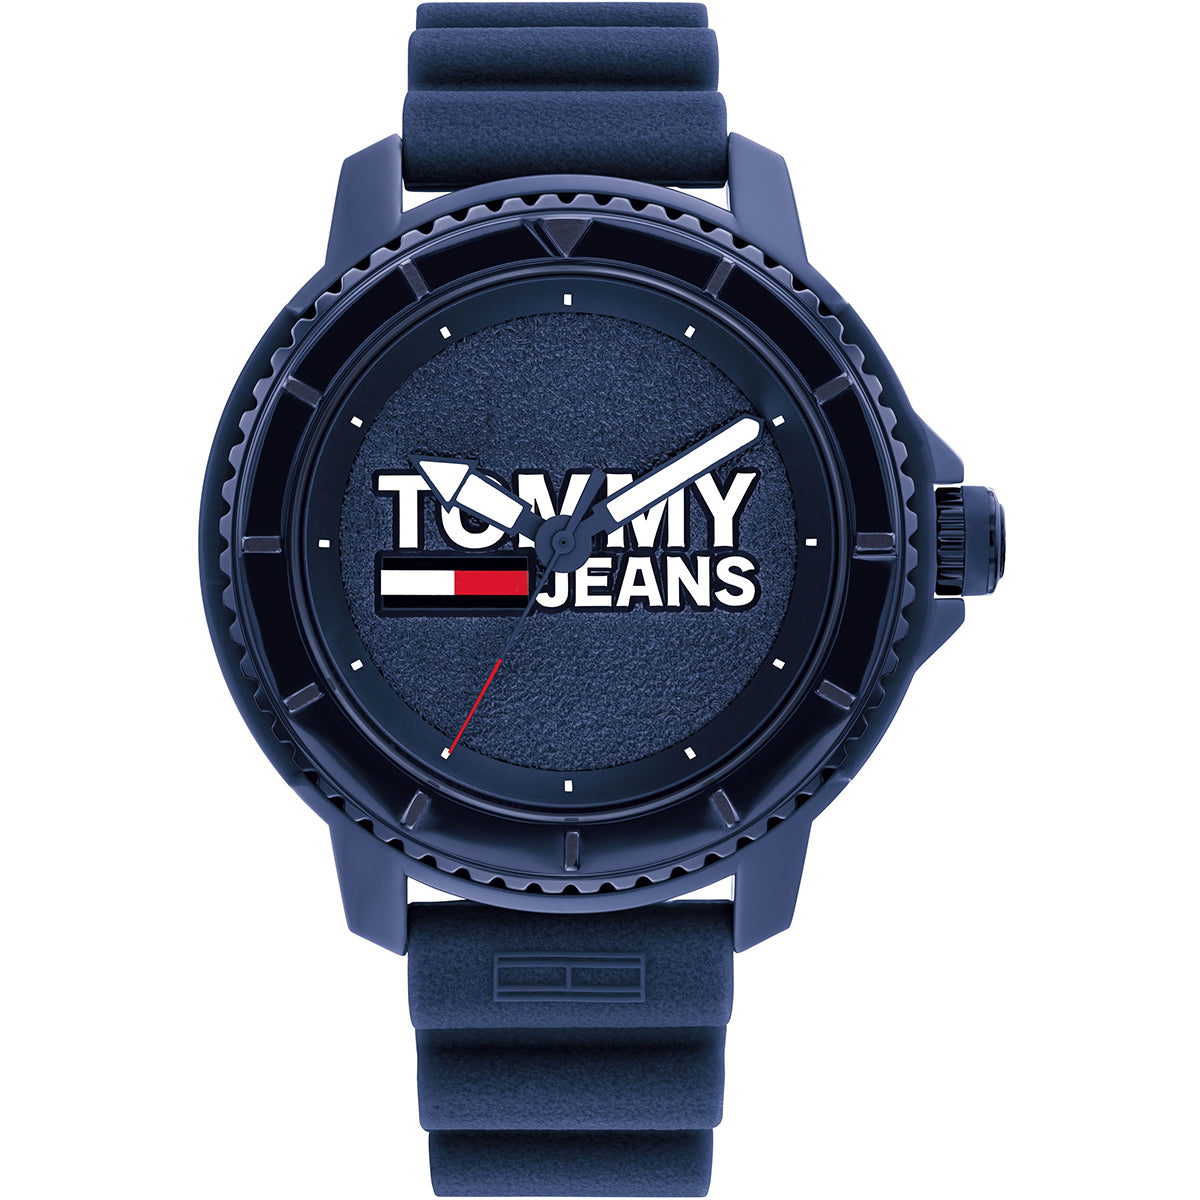 Tommy - Jeans Berlin - 172.0028